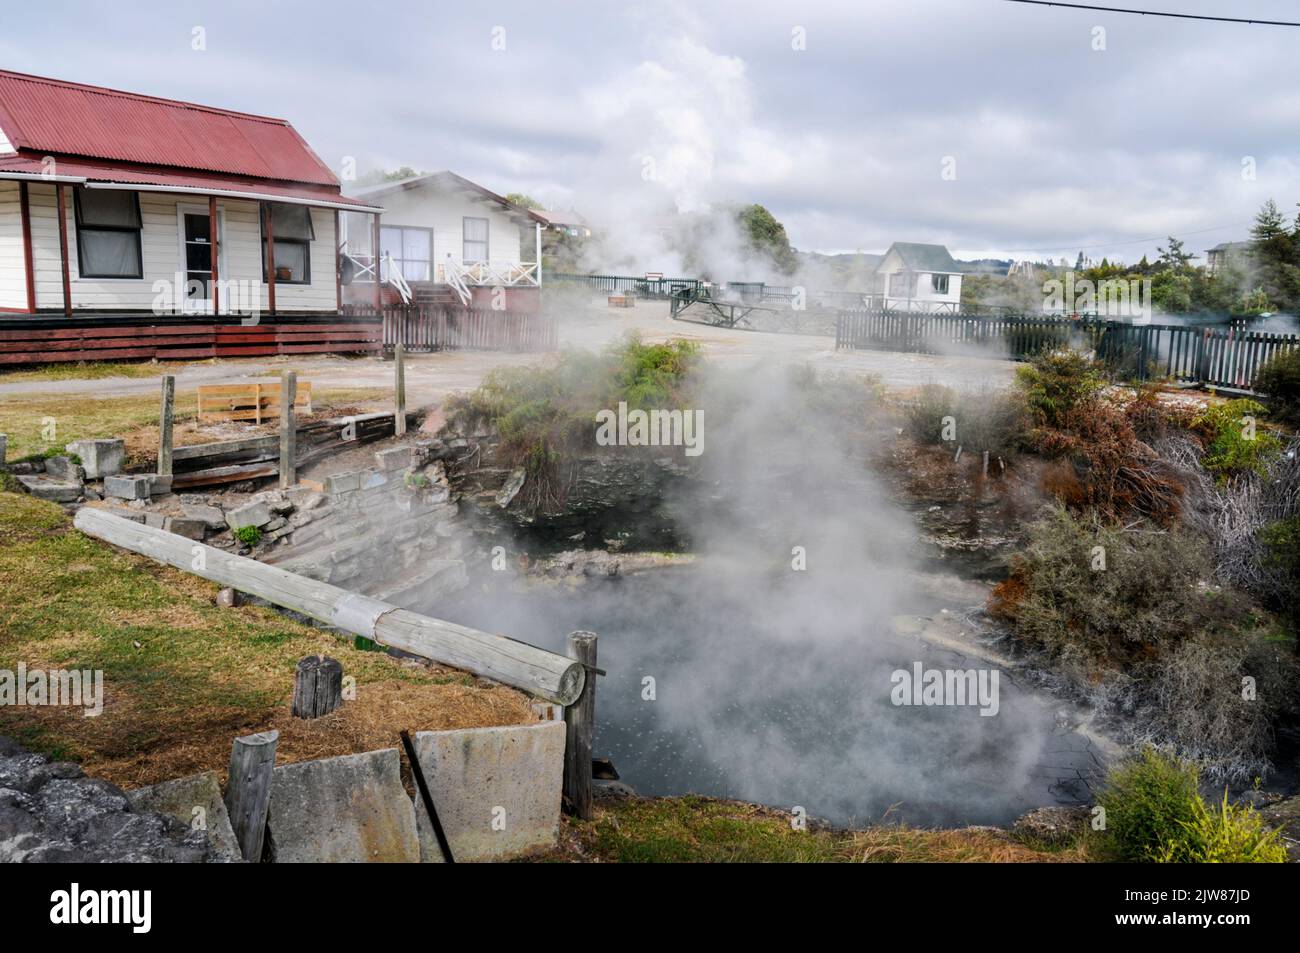 Dampf steigt aus einer heißen Quelle in einem kleinen Garten vor einem Maori-Familienhaus im einzigen lebenden Maori-Dorf Neuseelands, Whakarewarewa, auf Stockfoto